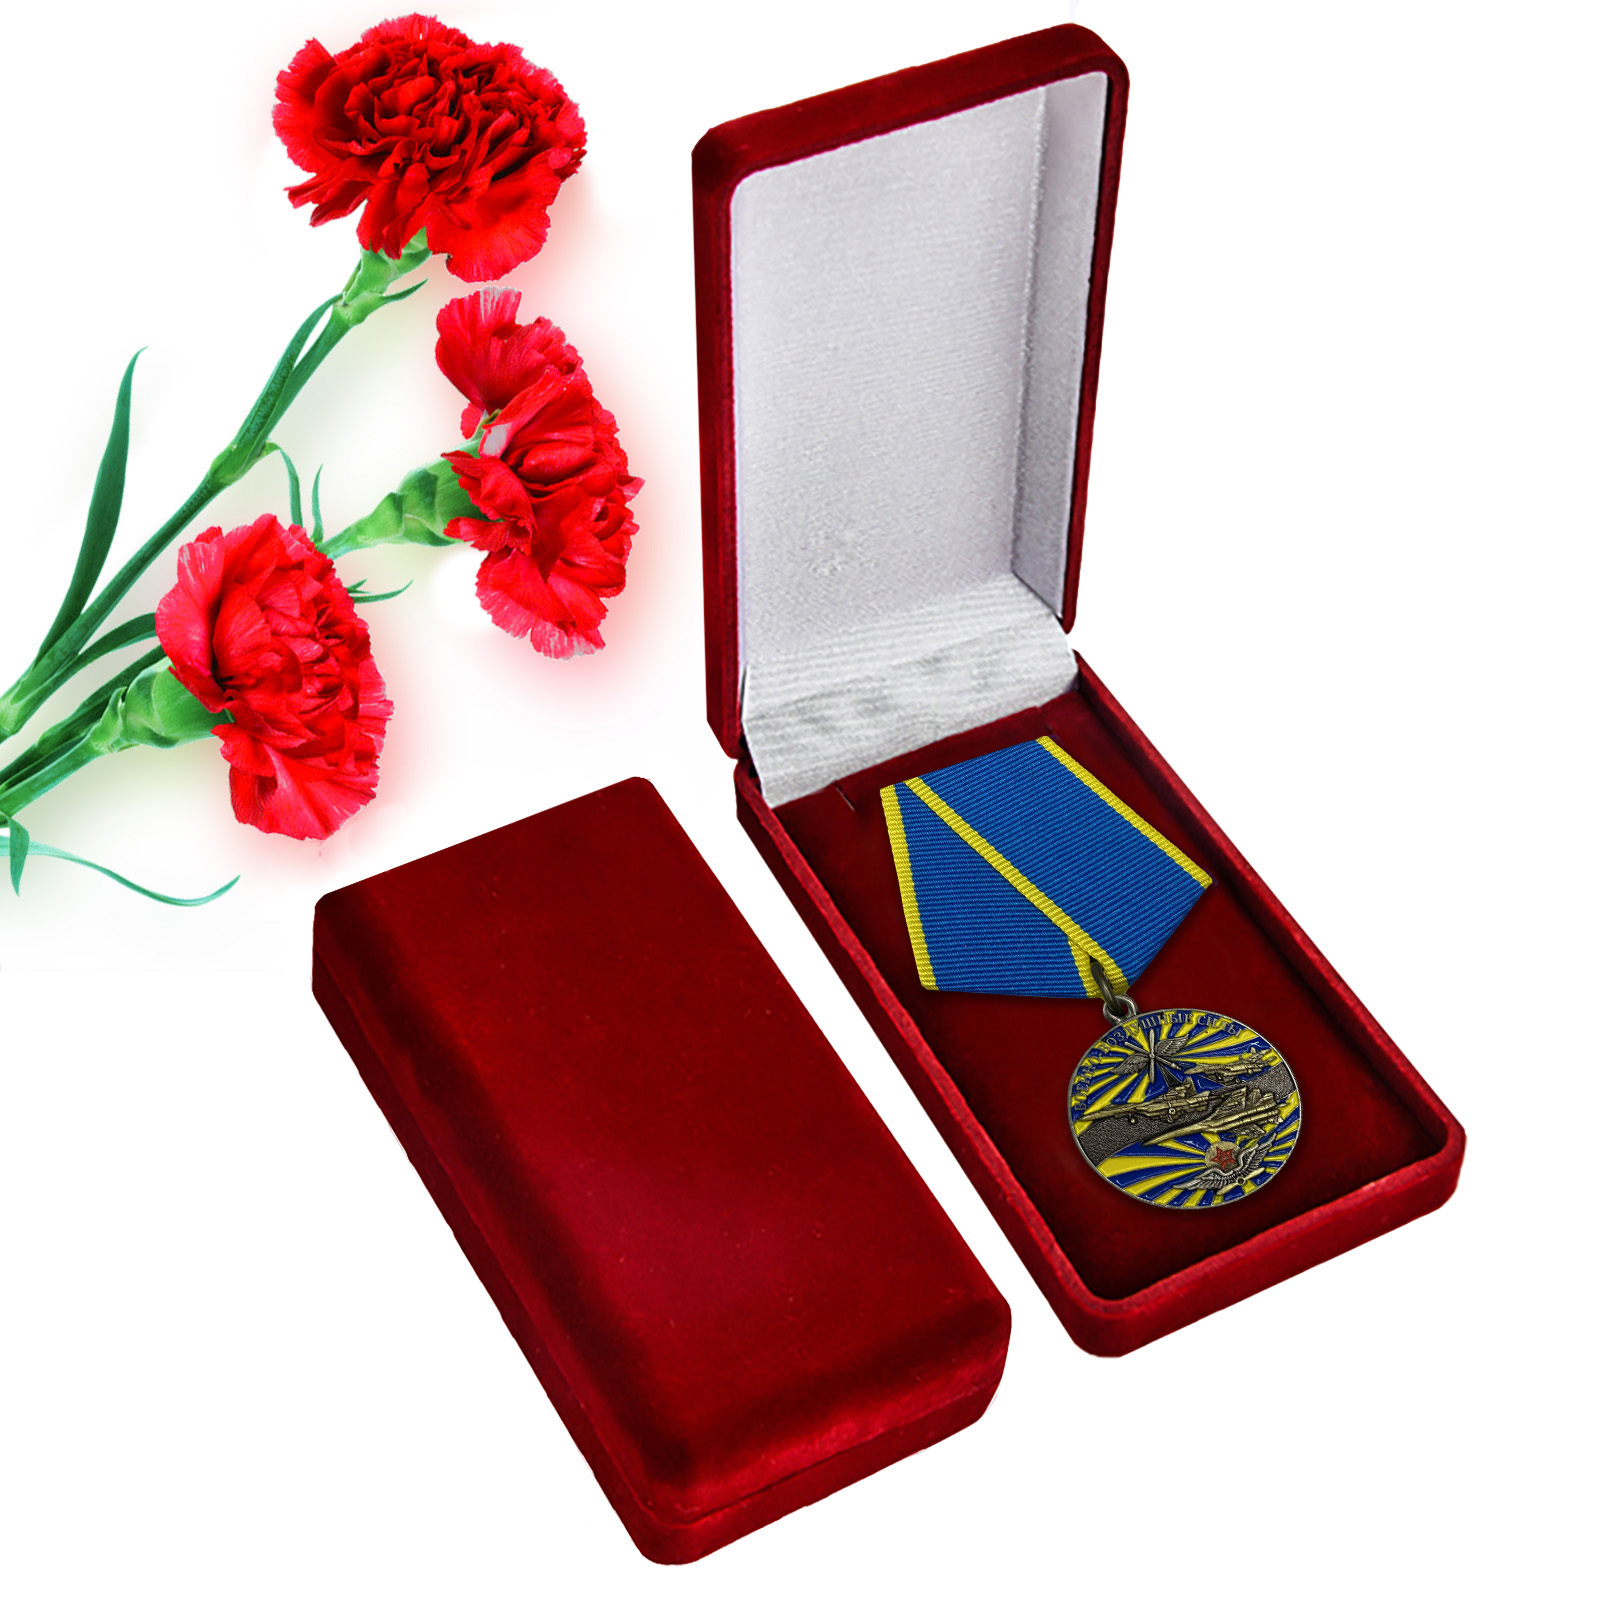 Купить памятную медаль Ветеран ВВС оптом или в розницу